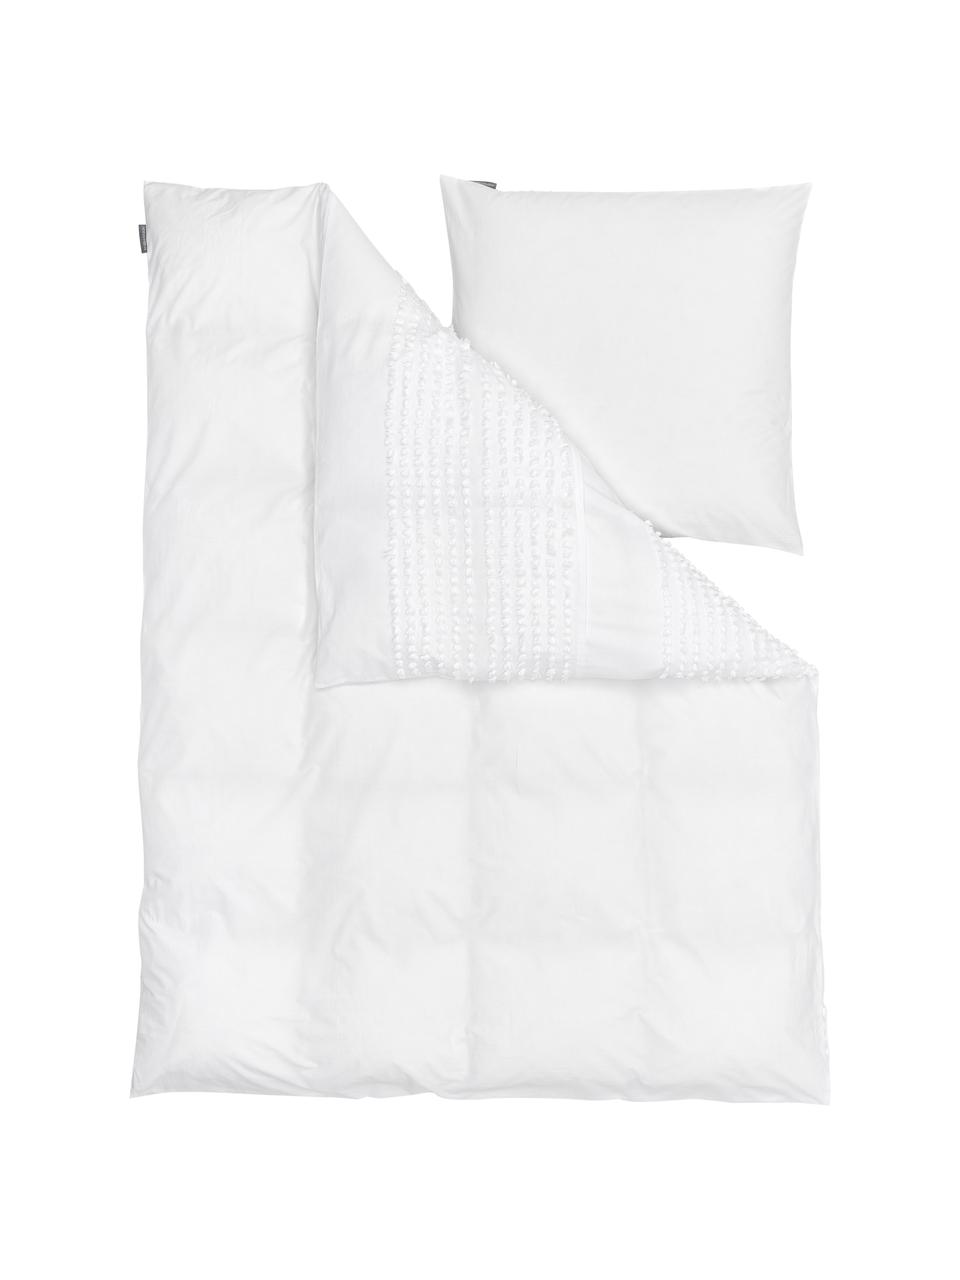 Bavlnená posteľná bielizeň s tuftovaným ozdobným prvkom Endure, 100 % bavlna
Hustota vlákna 144 TC, kvalita štandard
Bavlna je príjemná na dotyk, dobre absorbuje vlhkosť a je vhodná pre alergikov, Biela, 155 x 220 cm + 1 vankúš 80 x 80 cm